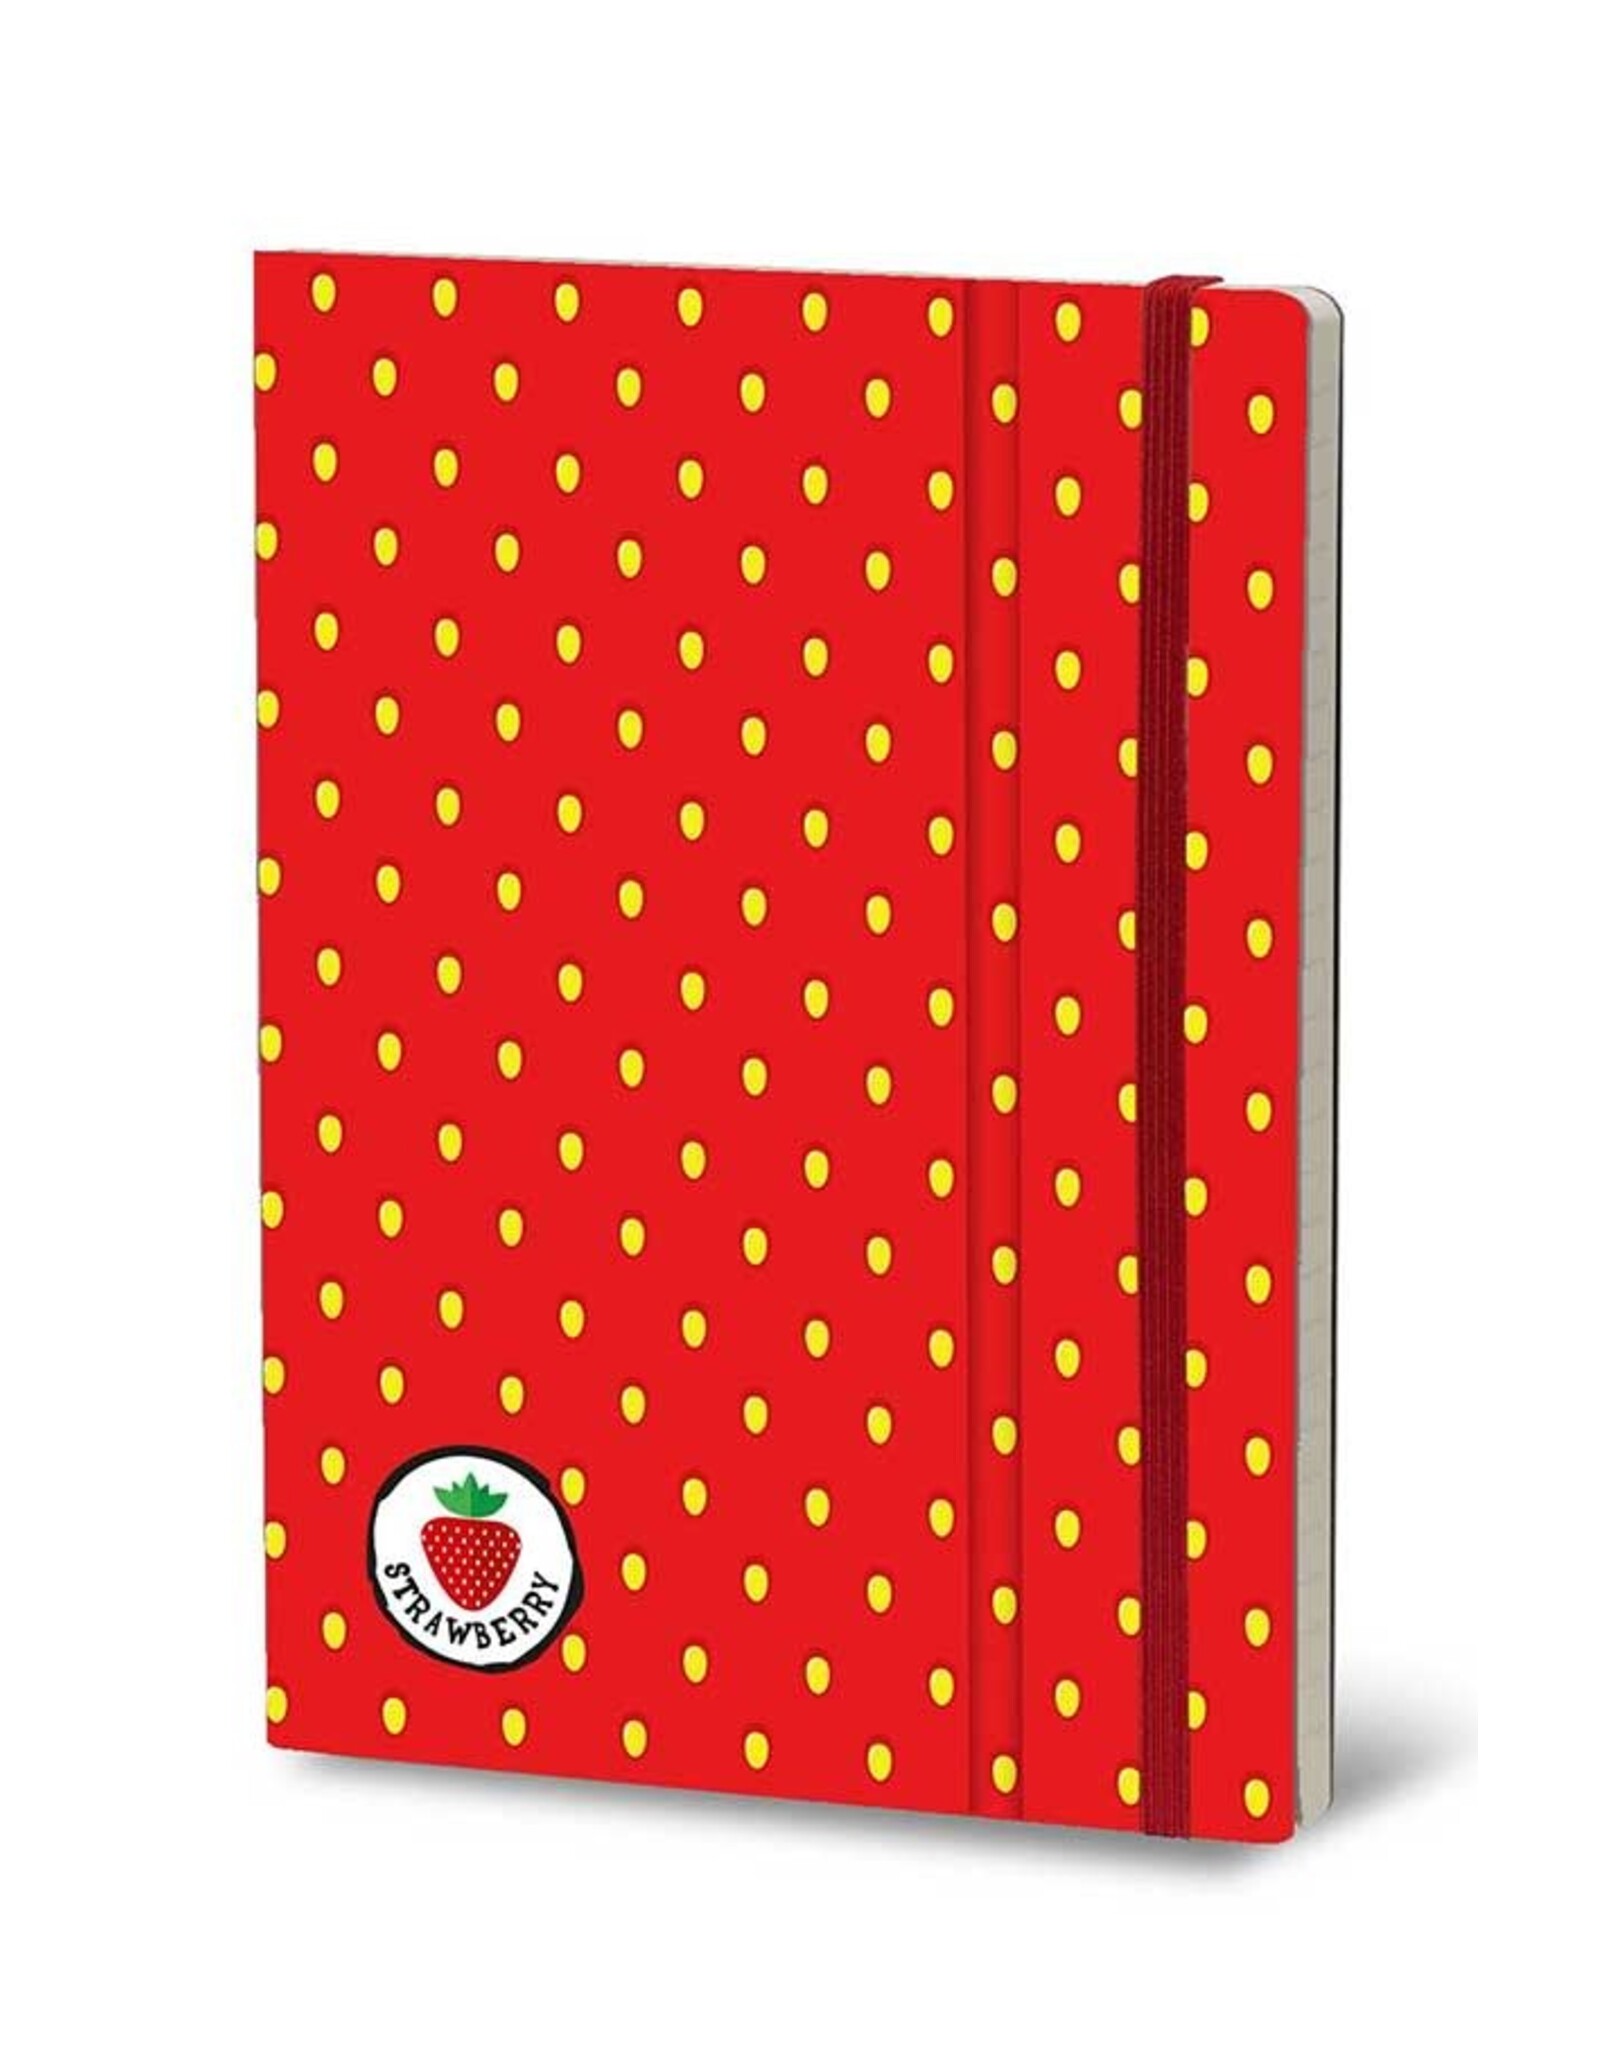 Giuliano Mazzuoli Stifflex Notebook,  15 X 21 Cm, Strawberry